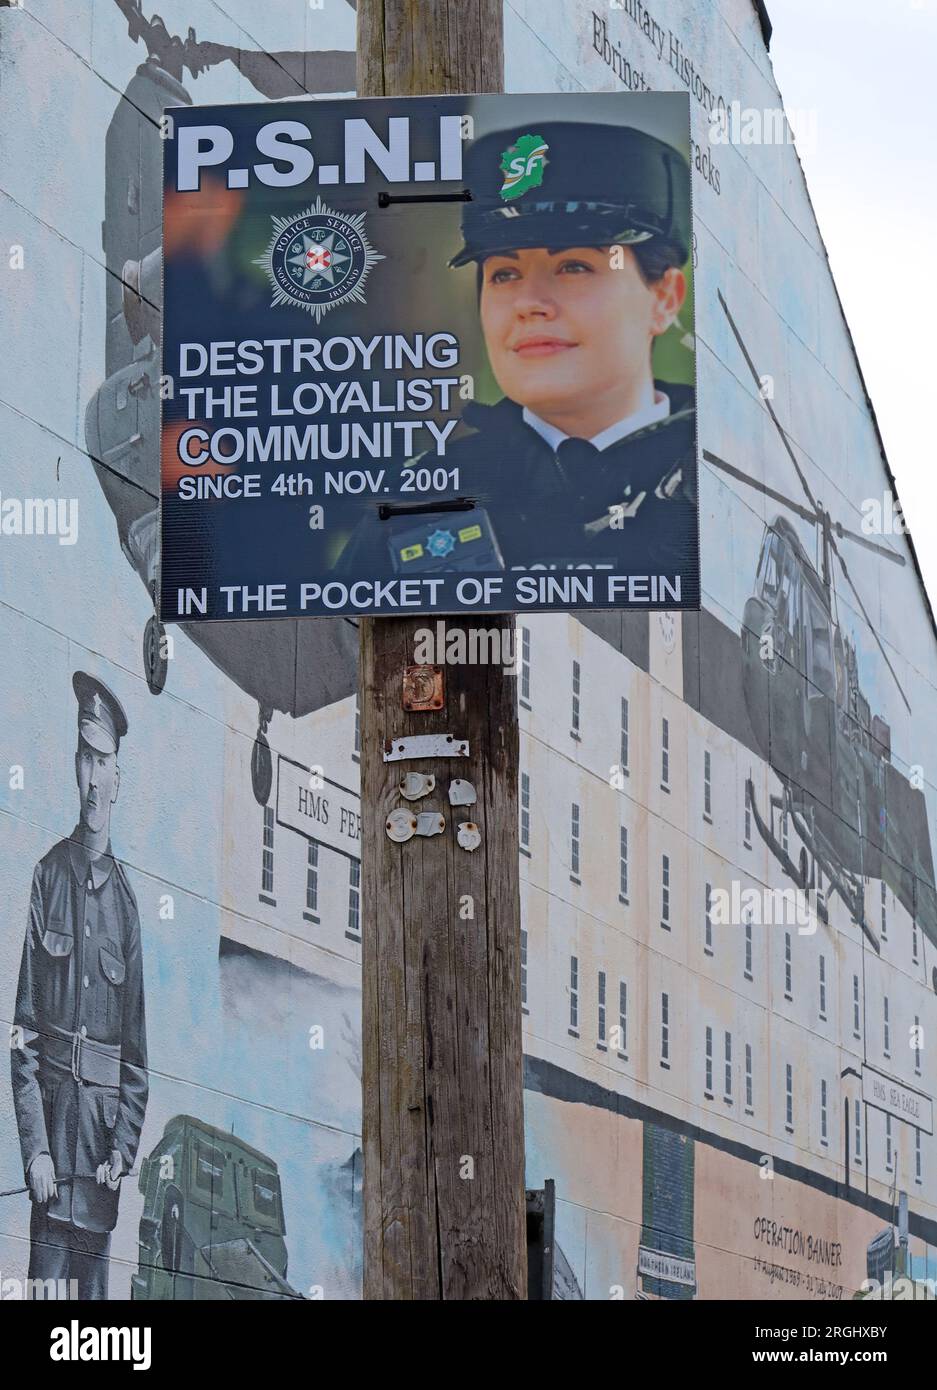 PSNI in der Tasche von Sinn Fein, Destroying the Loyalist Community, signieren in Pine St, Ebrington District of Londonderry, Northern Ireland, UK, BT47 6EJ Stockfoto